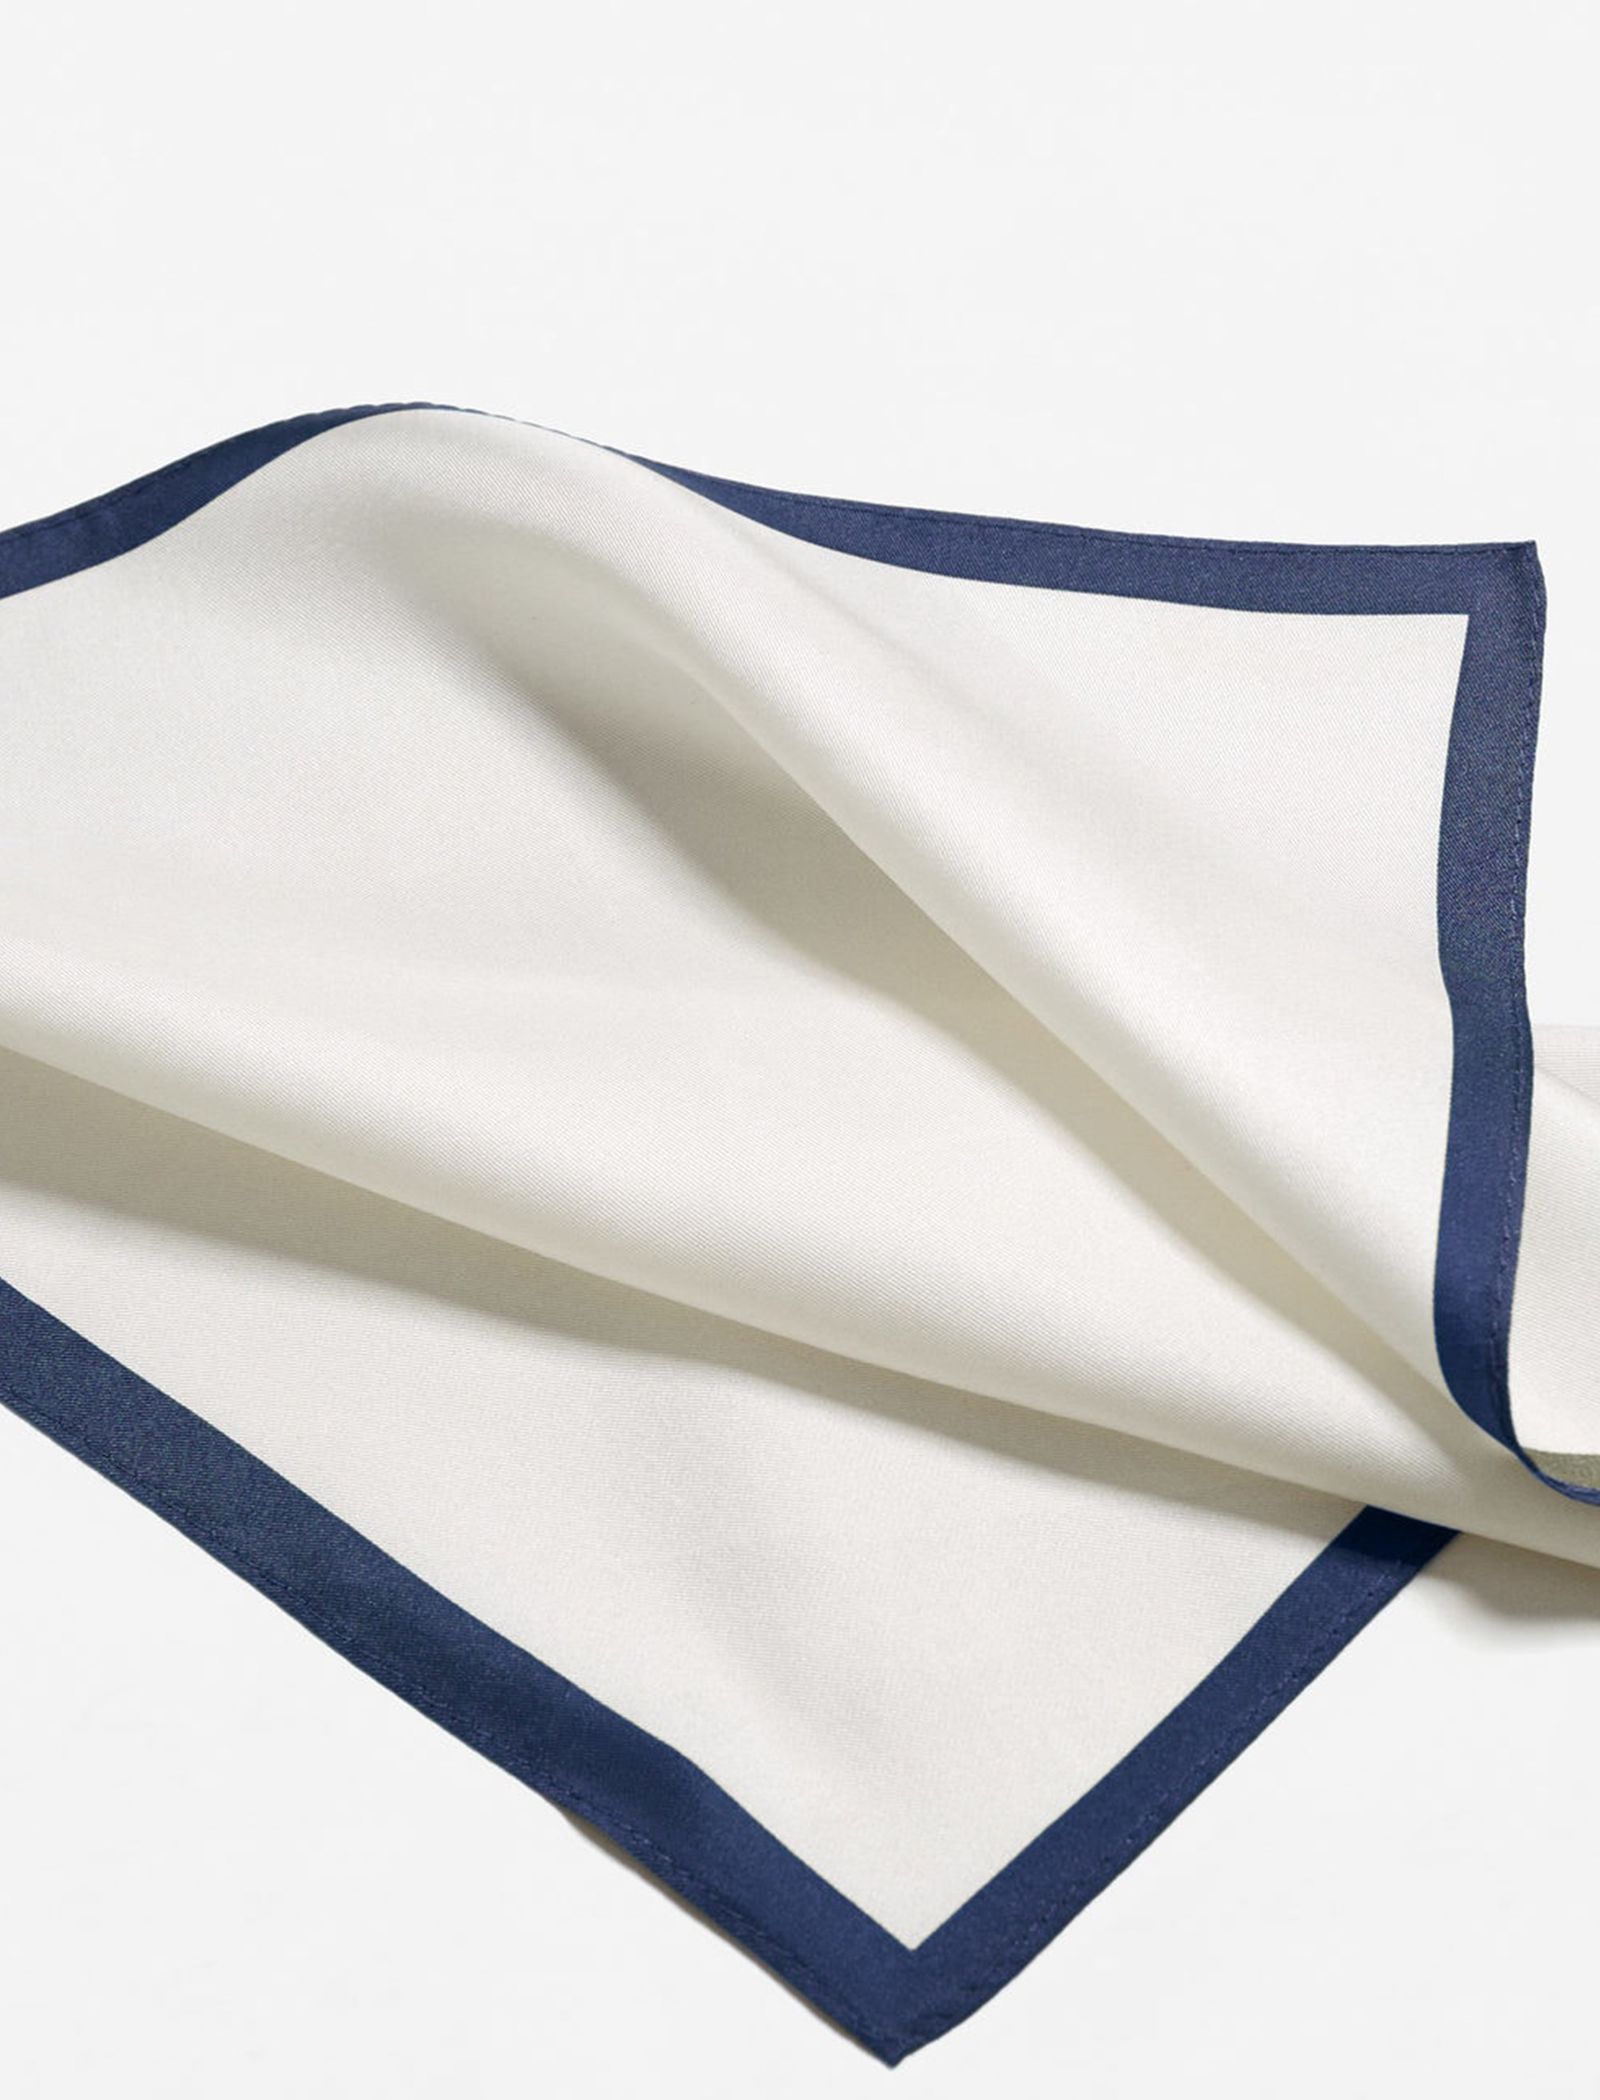 دستمال جیب ابریشم ساده مردانه - مانگو - سفيد و سرمه اي - 4